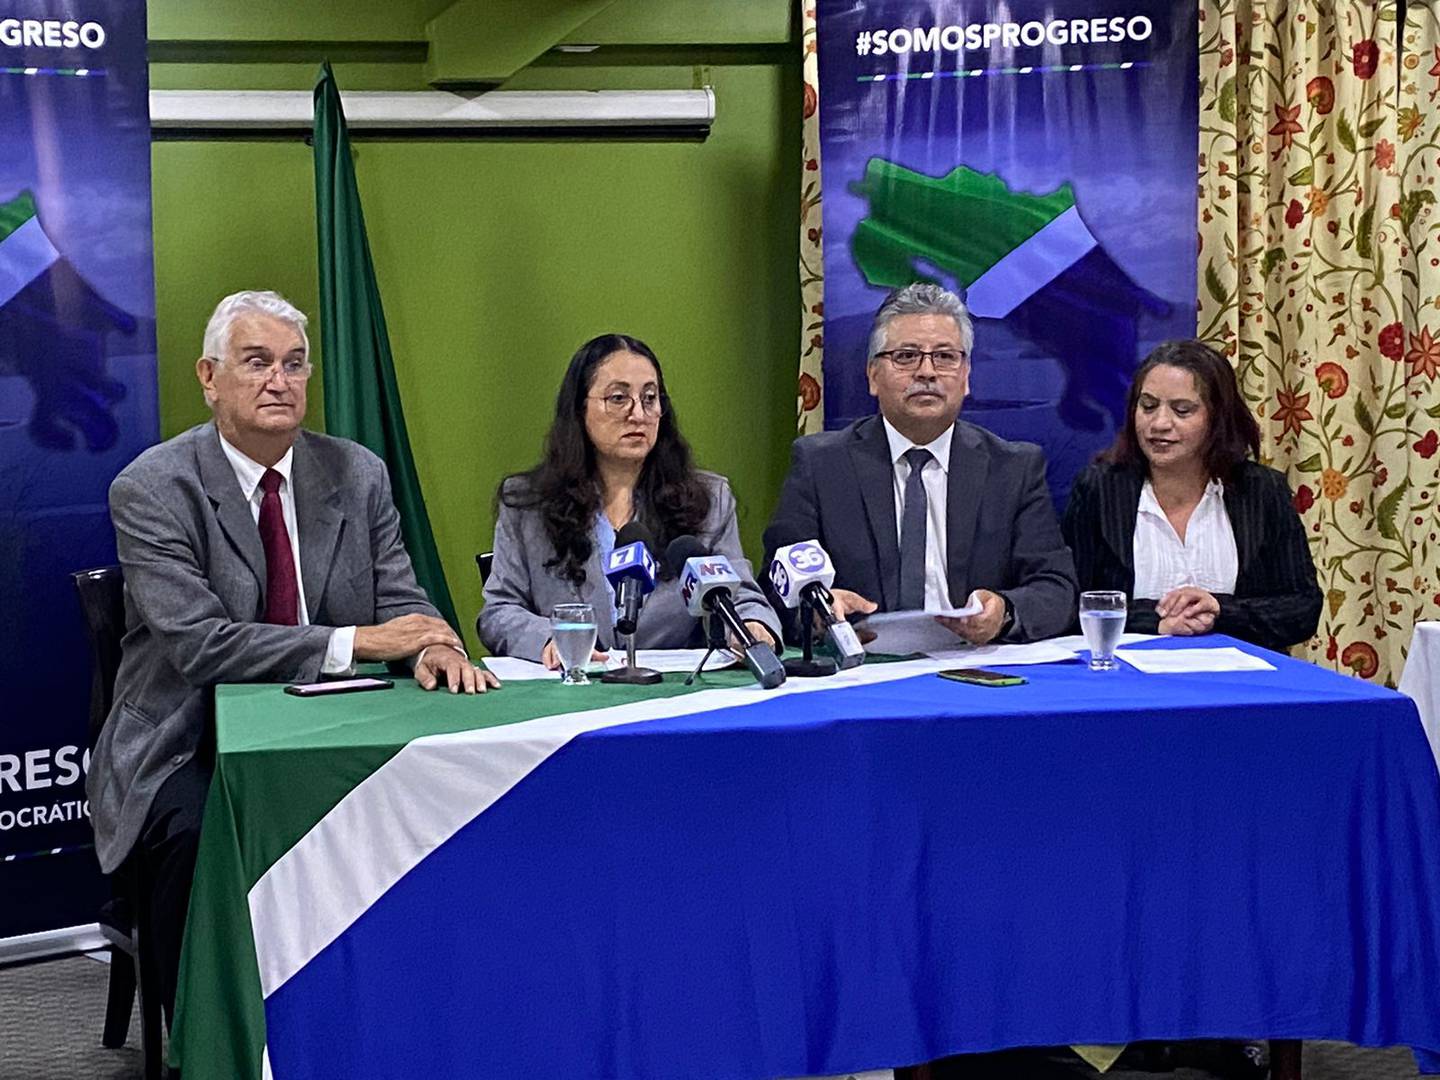 Luz Mary Alpízar dirigió la conferencia en que se anunció la expulsión de 9 diputados del partido Progreso Social Democrático.